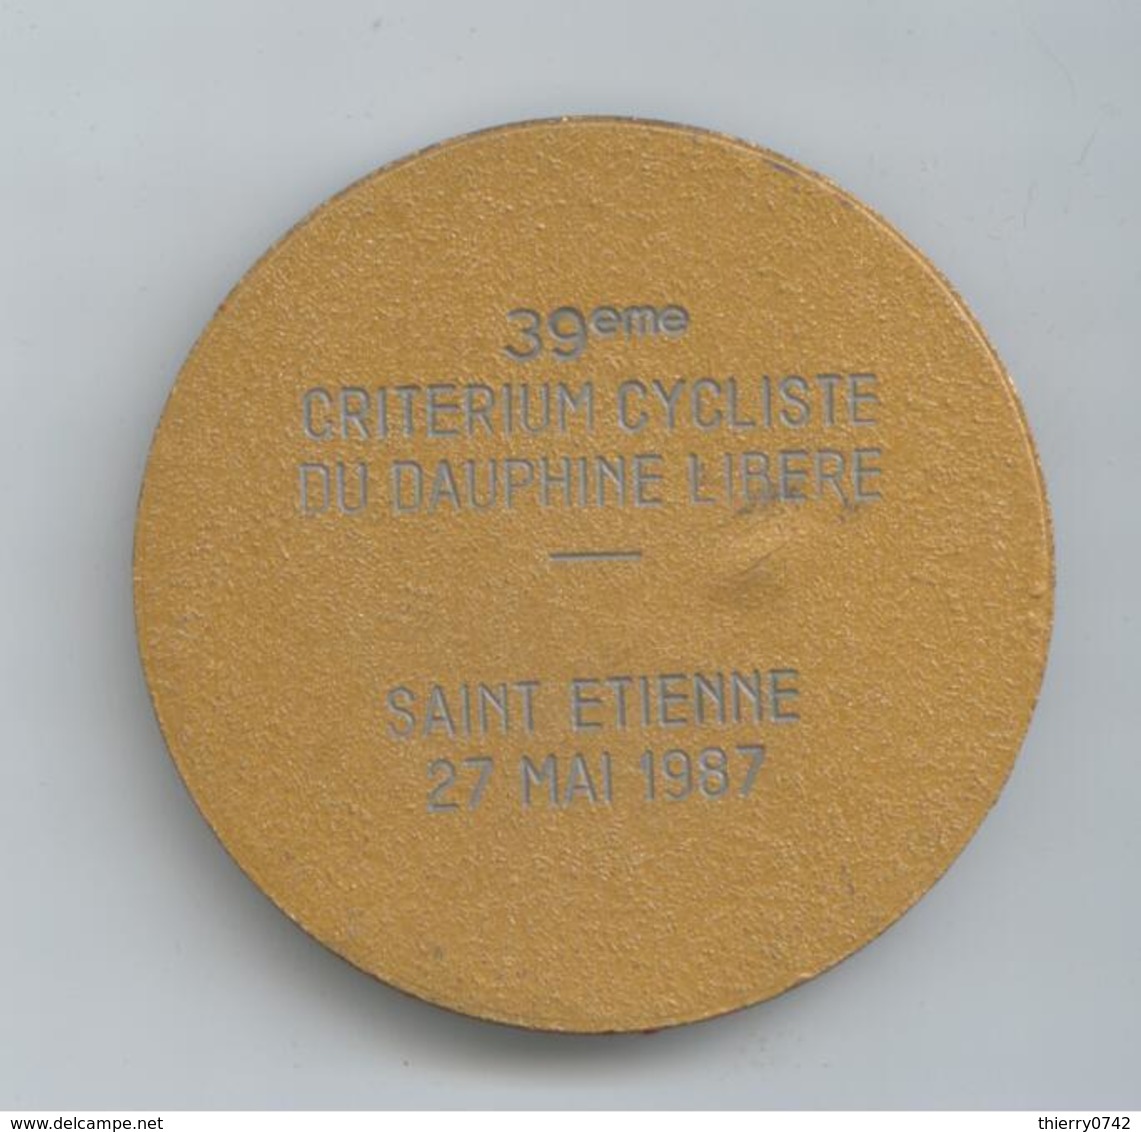 PLAQUE VELO CYCLISME 39 IEME CRITERIUM DAUPHINE LIBERE SAINT ETIENNE 1987 DETAILS - Cyclisme